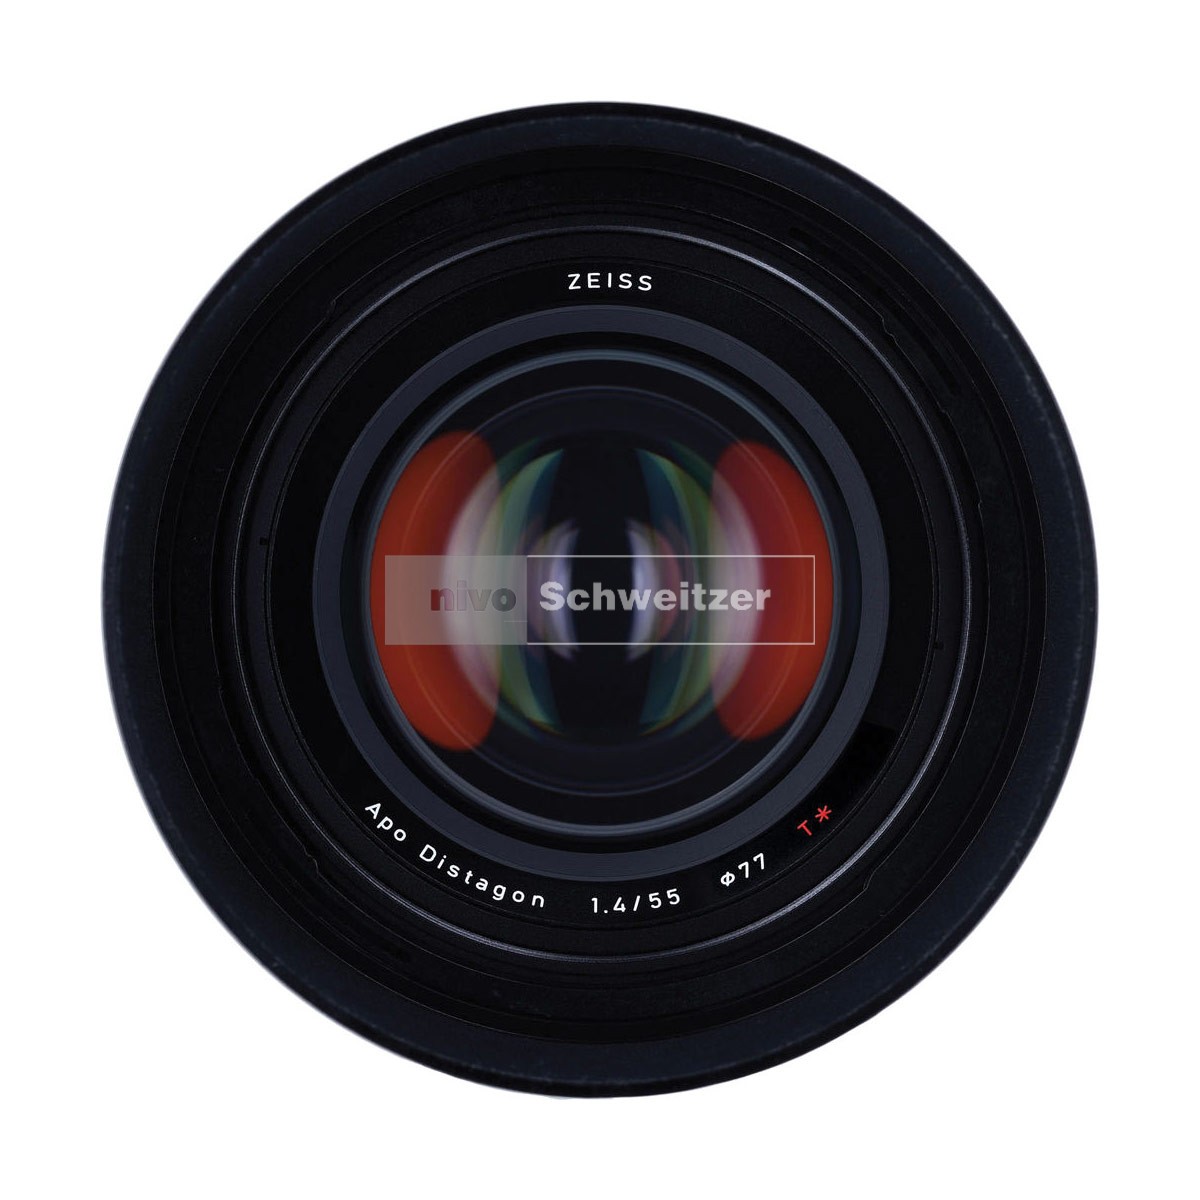 ZEISS Otus ZE  55mm/1.4 Apo-Distagon T* [Canon EOS-bajonet - manual focus]   E77